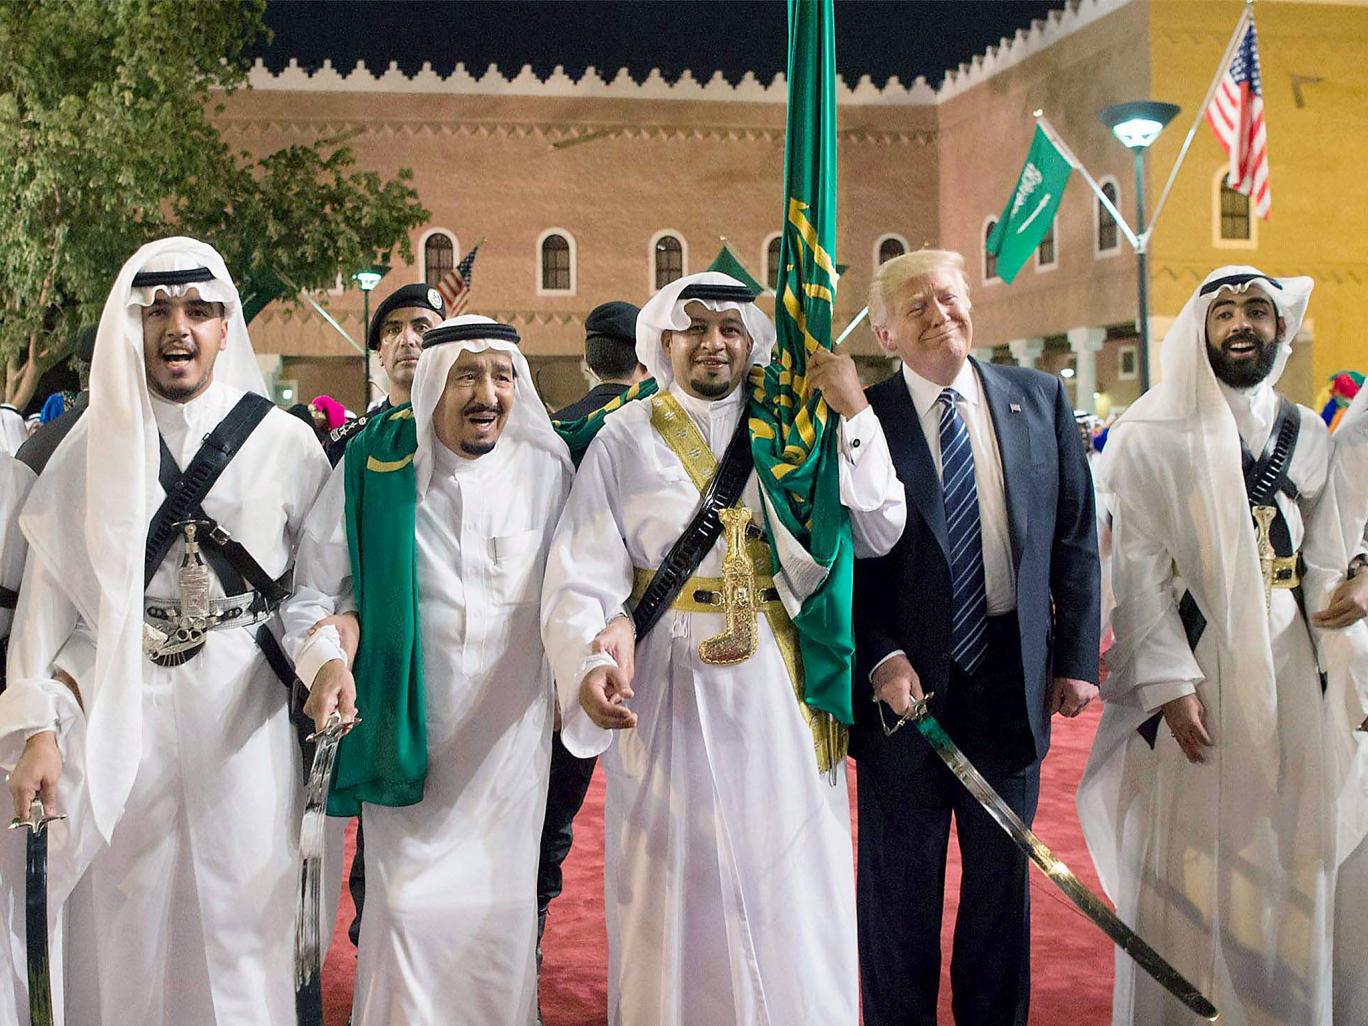 ‘InContext’ webgunetik hartutako irudian, AEBetako lehendakari Donald Trump eta Saudi Arabiako errege Salman Abdulaziz erregea (ezkerretik bigarrena) ‘Ezpata-dantza’ jokatzen Riadera amerikarrak egindako azken bidaian. Ekialde Hurbileko karta geopolitikoa